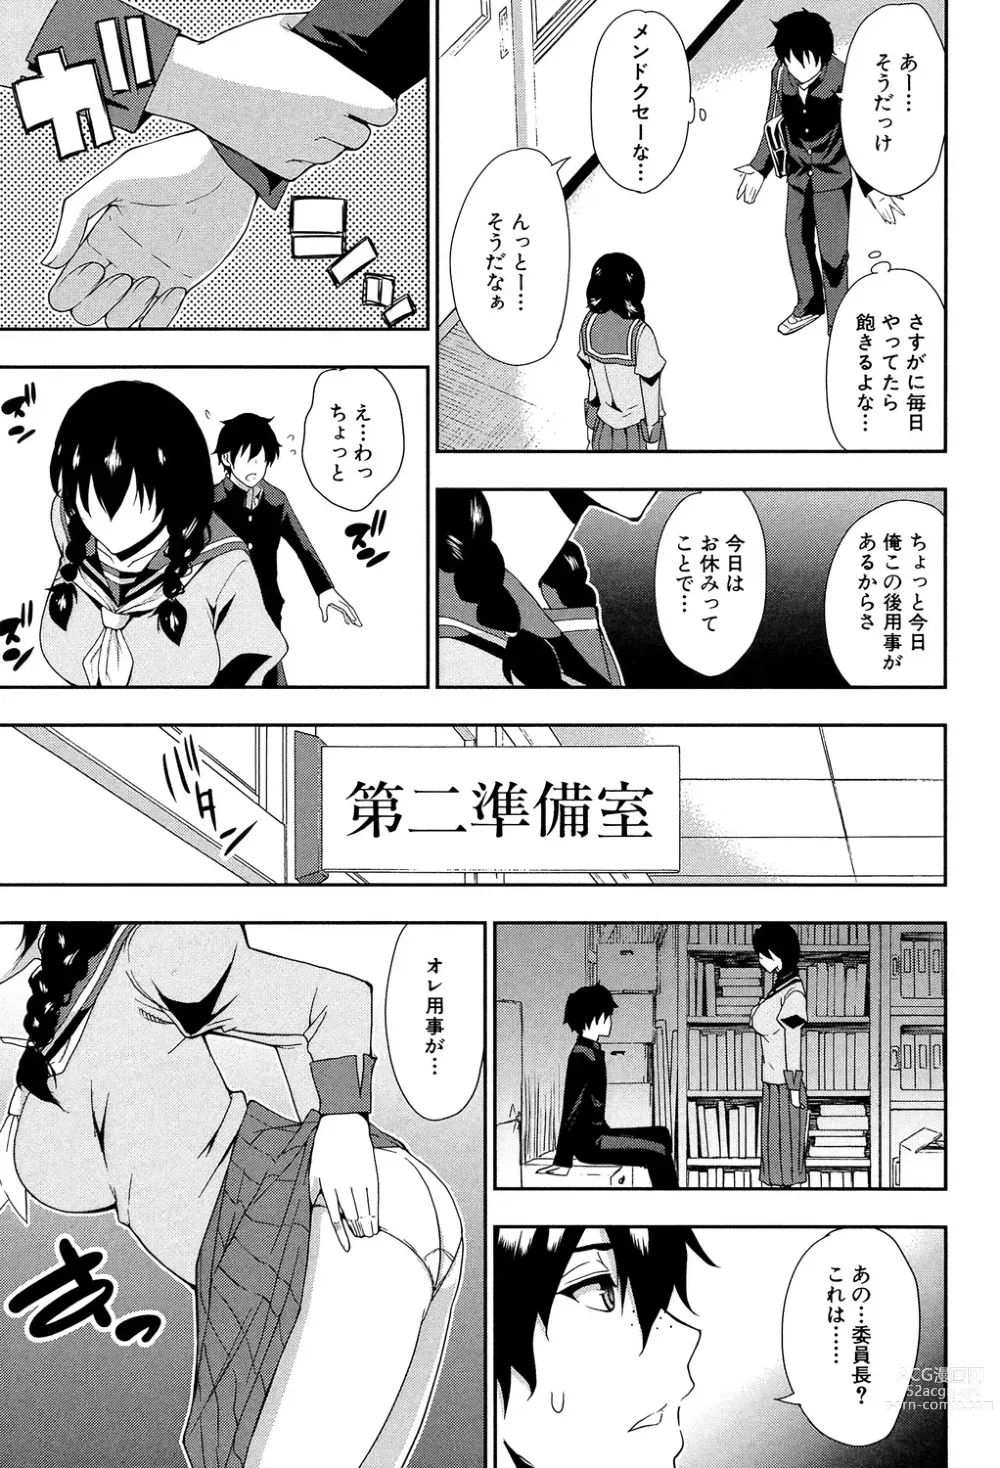 Page 201 of manga Osaekirenai kono Kimochi